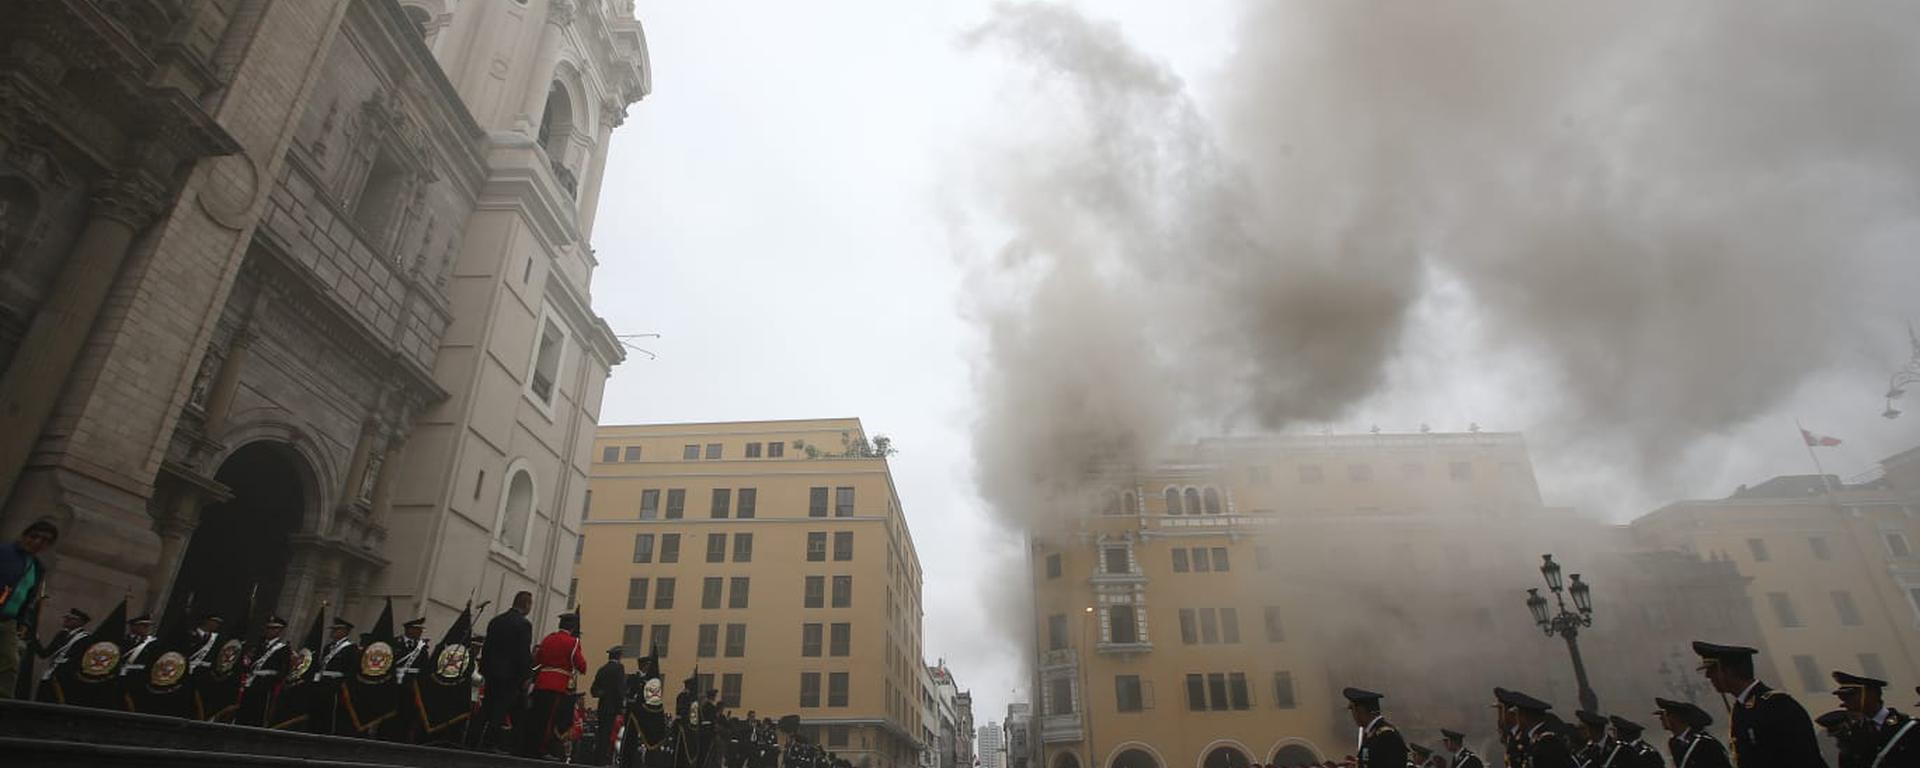 Incendio en Plaza de Armas: todo lo que ocurrió durante las celebraciones por el día de Santa Rosa de Lima